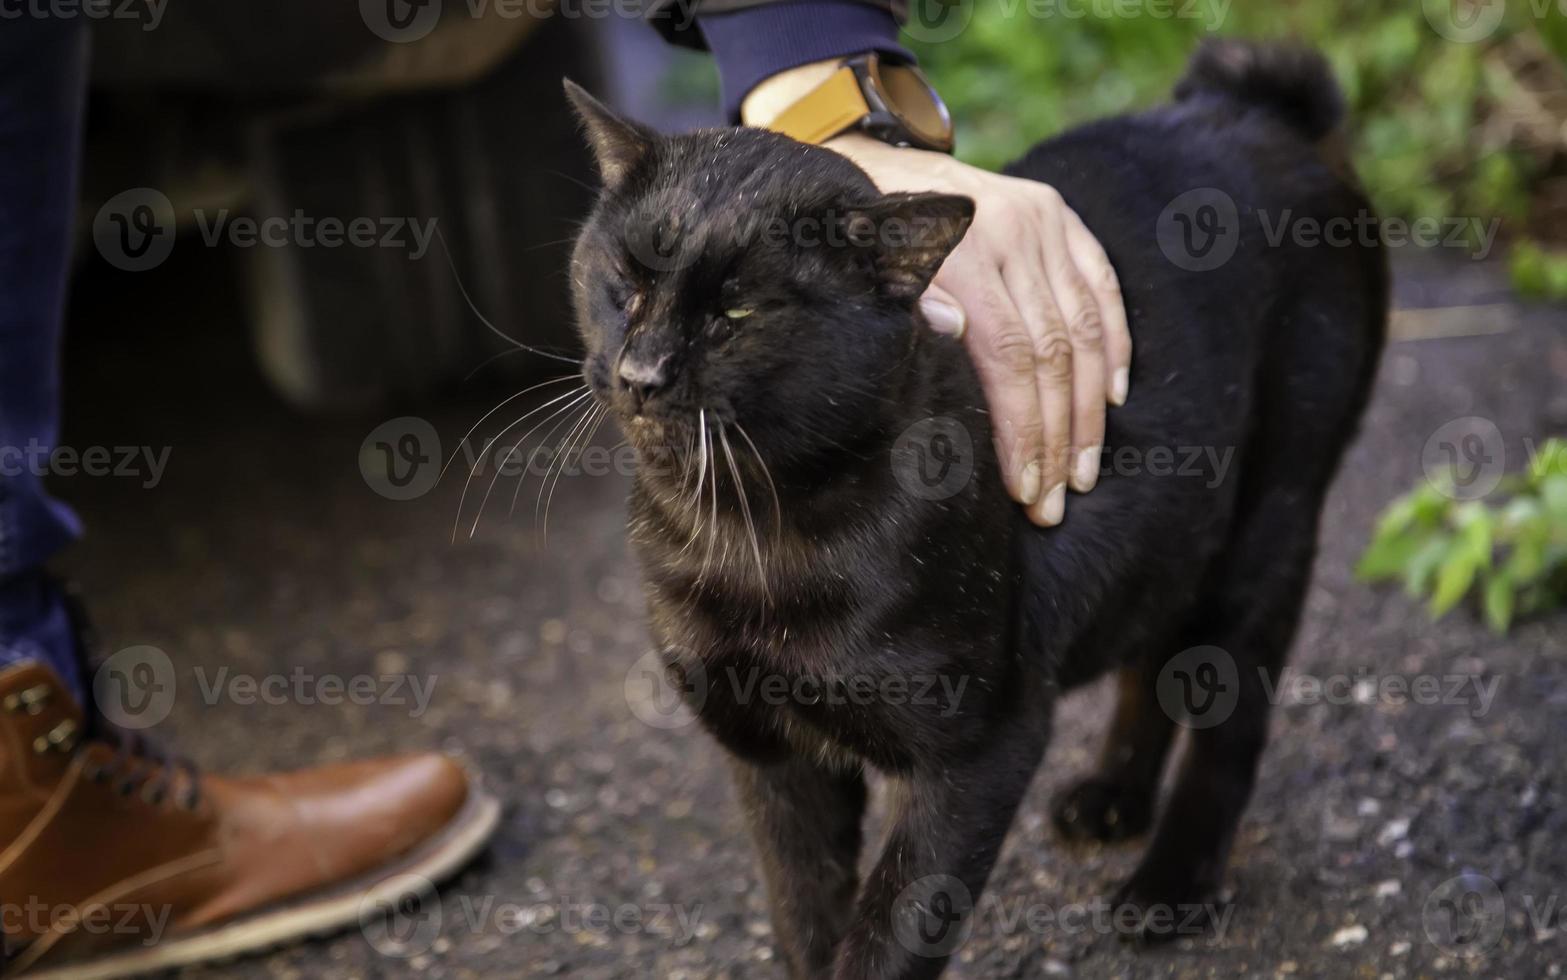 zwarte kat op straat foto